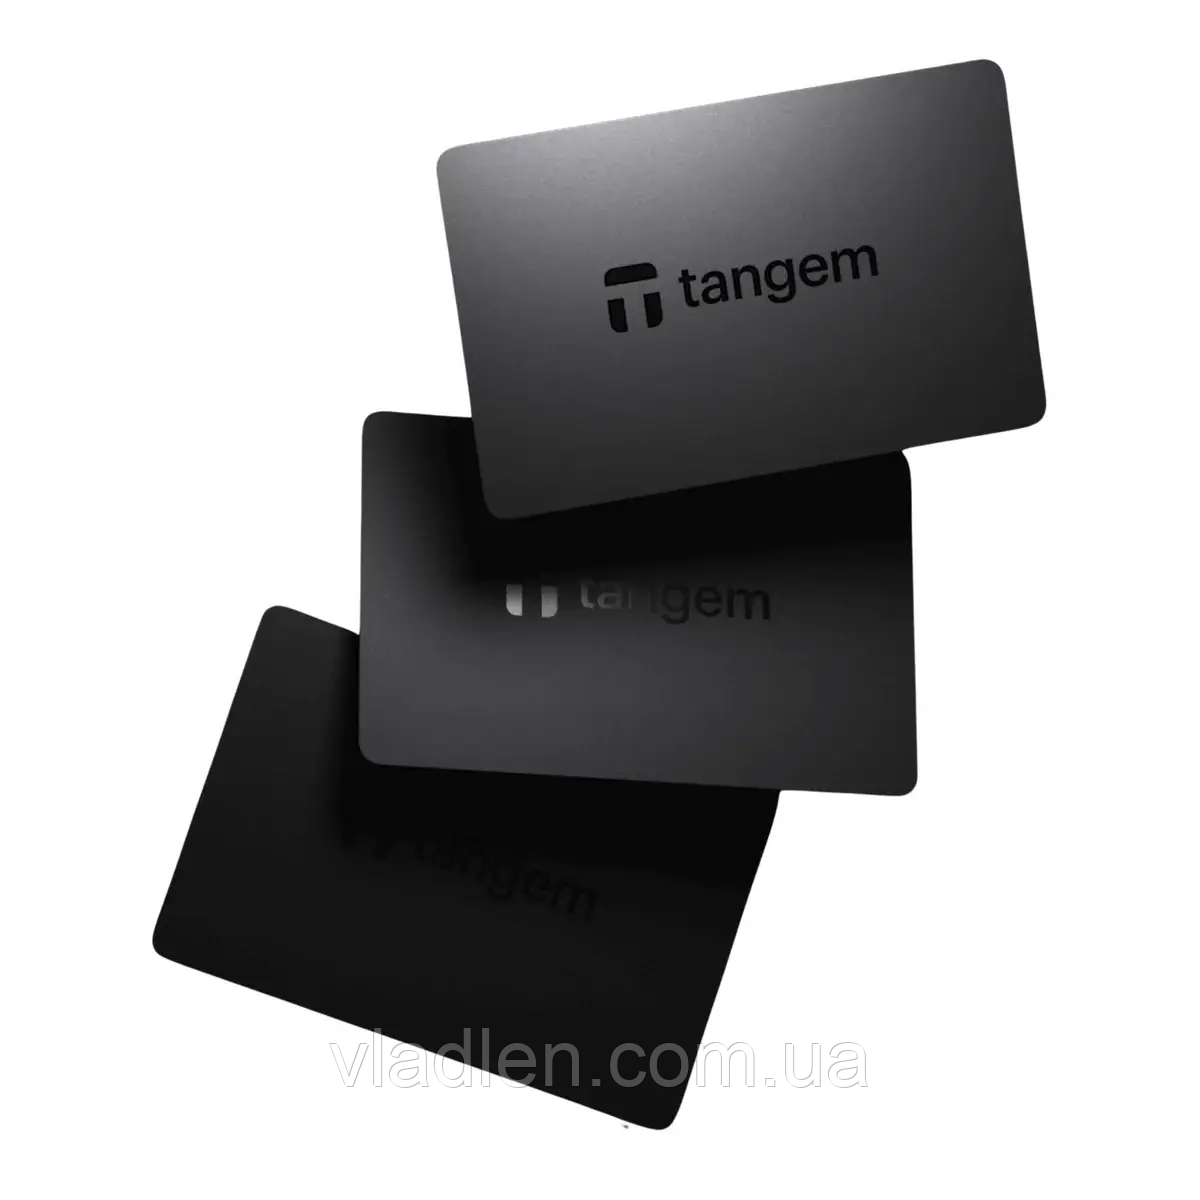 Tangem Wallet Card 2.0 - Набір з 3 карток Black/Чорний мультивалютний криптогаманець